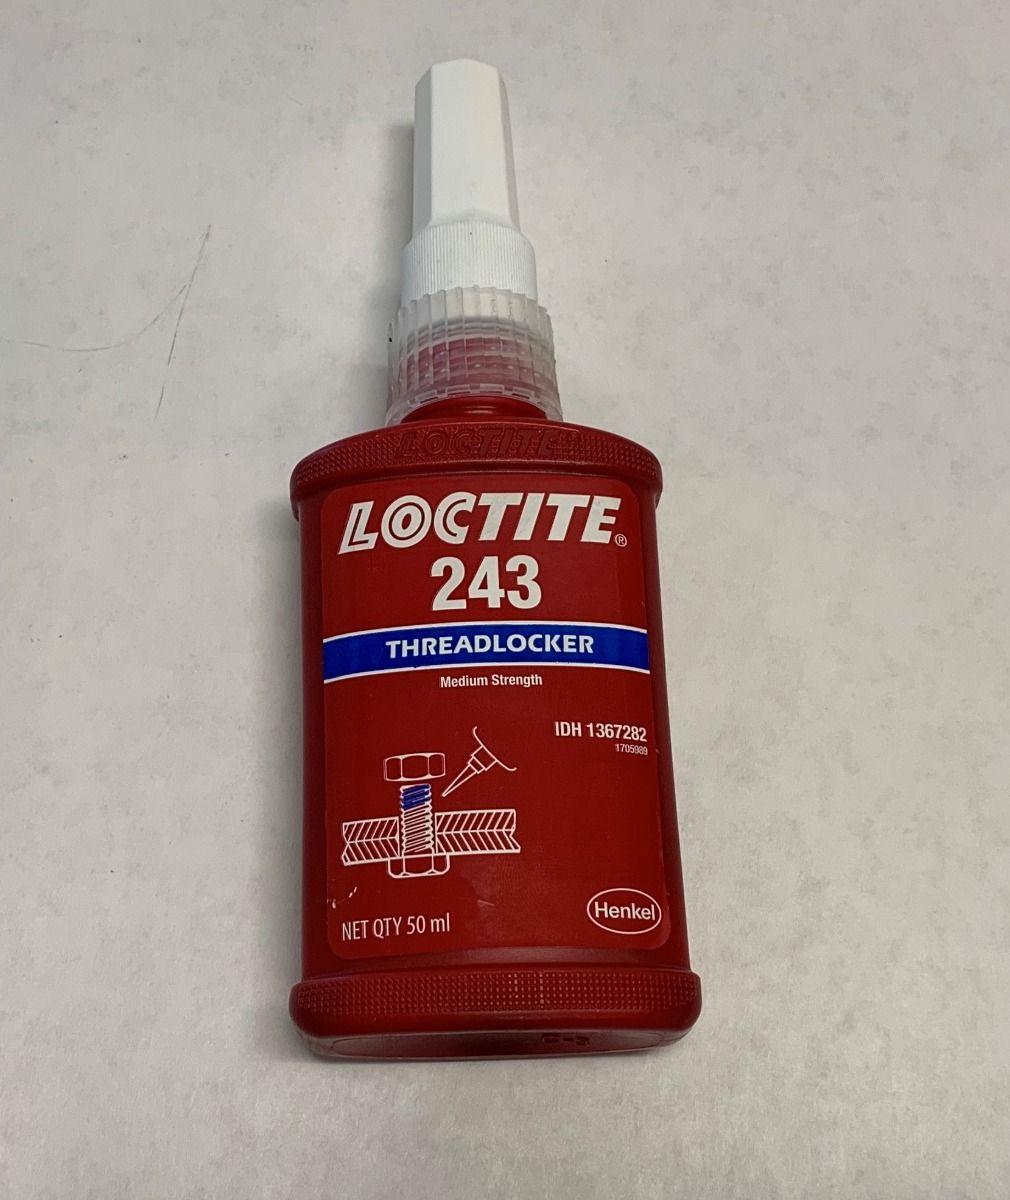 Loctite 243 For Threadlocking